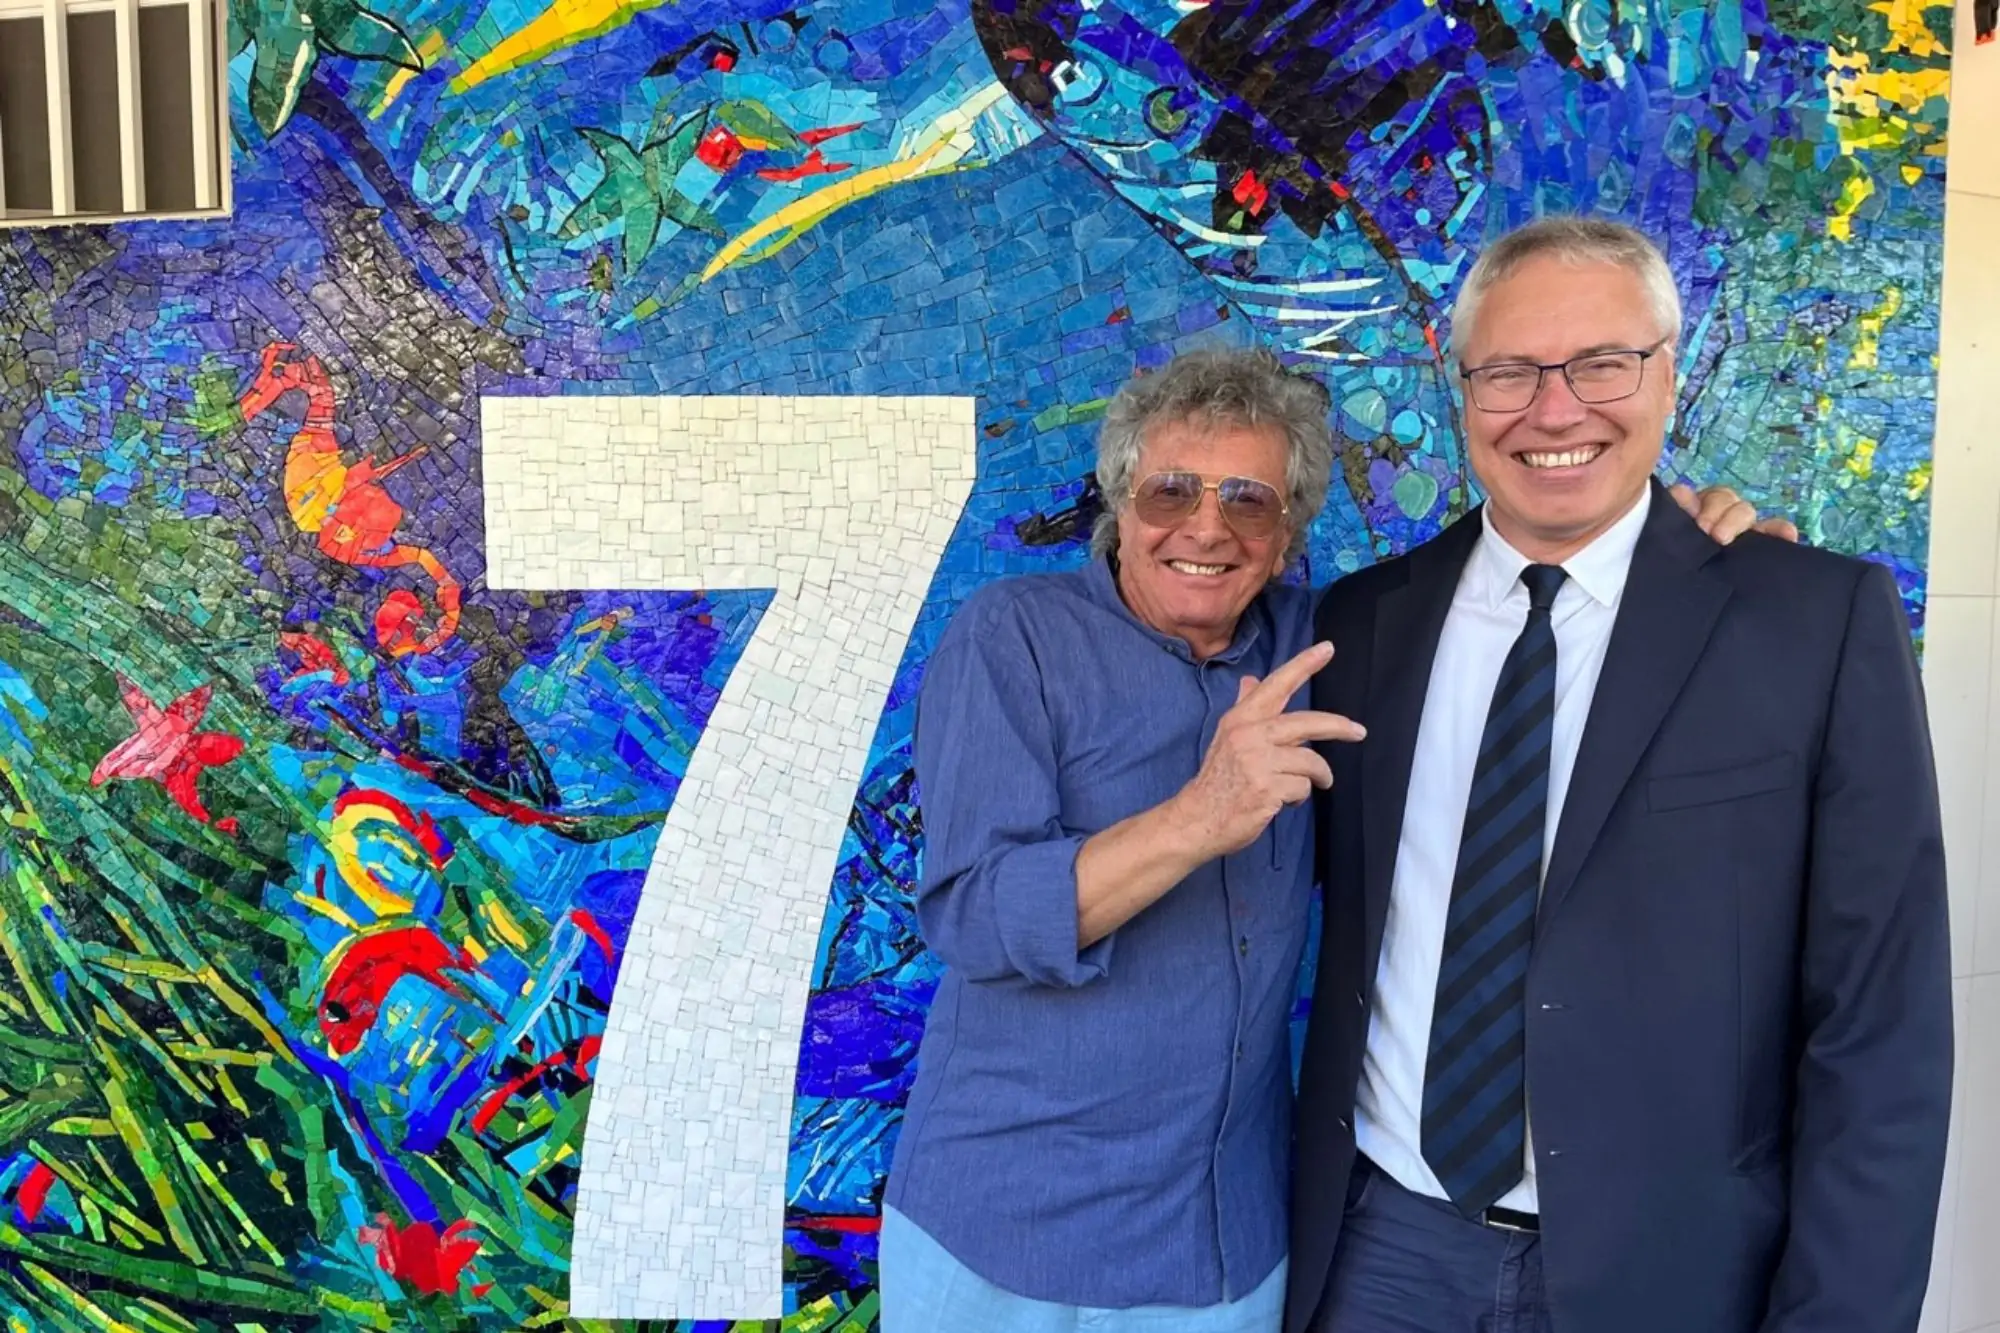 galleria mosaici lungomare kechler lignano sabbiadoro_Il presidente del Consiglio regionale del Fvg, Mauro Bordin, insieme all'artista Gianni Borta